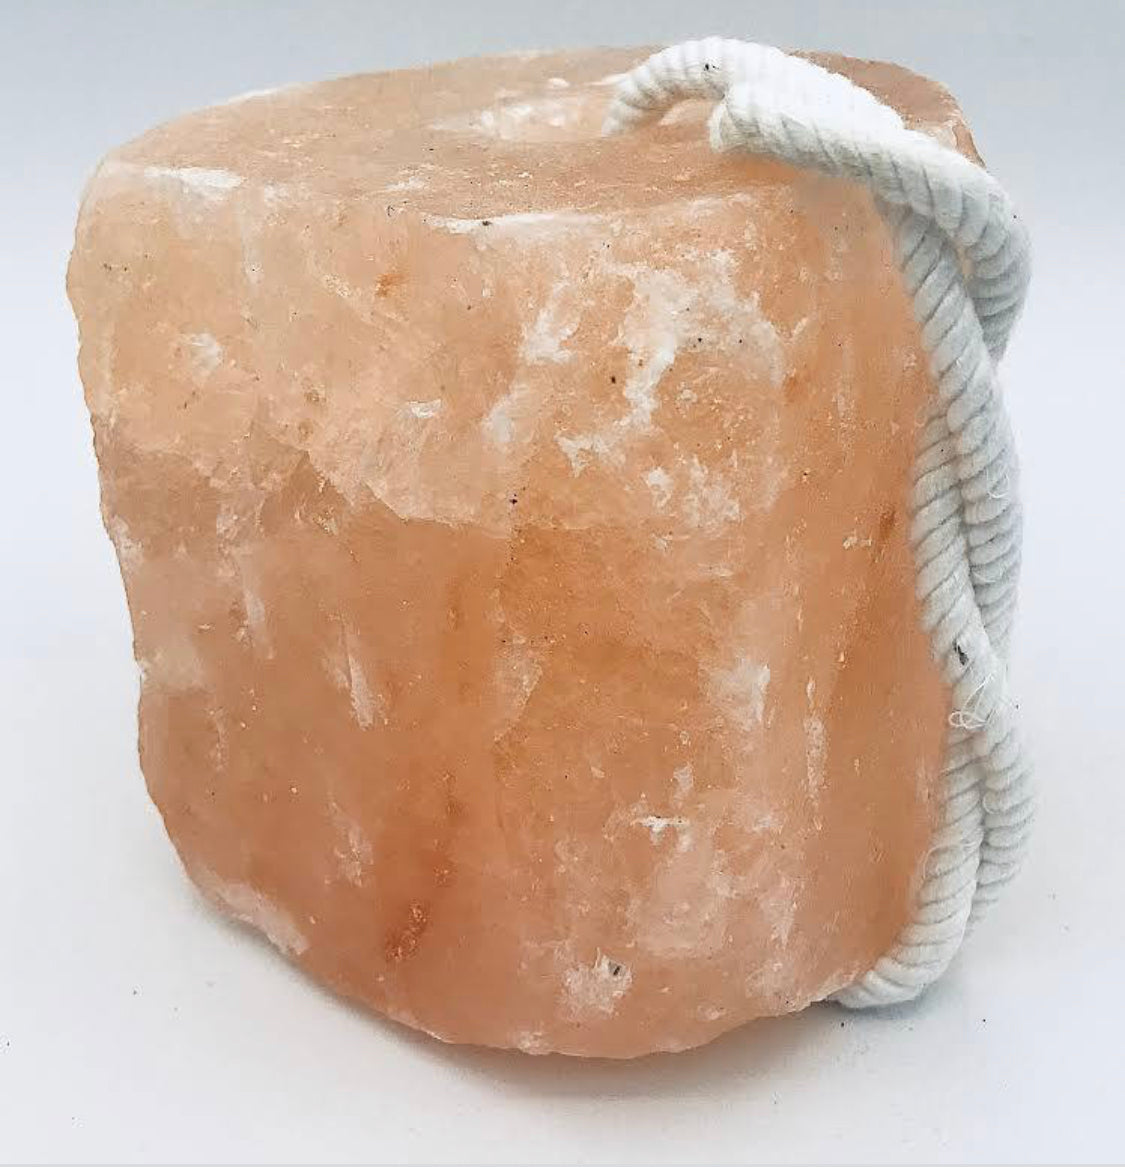 Himalayan Salt Stone